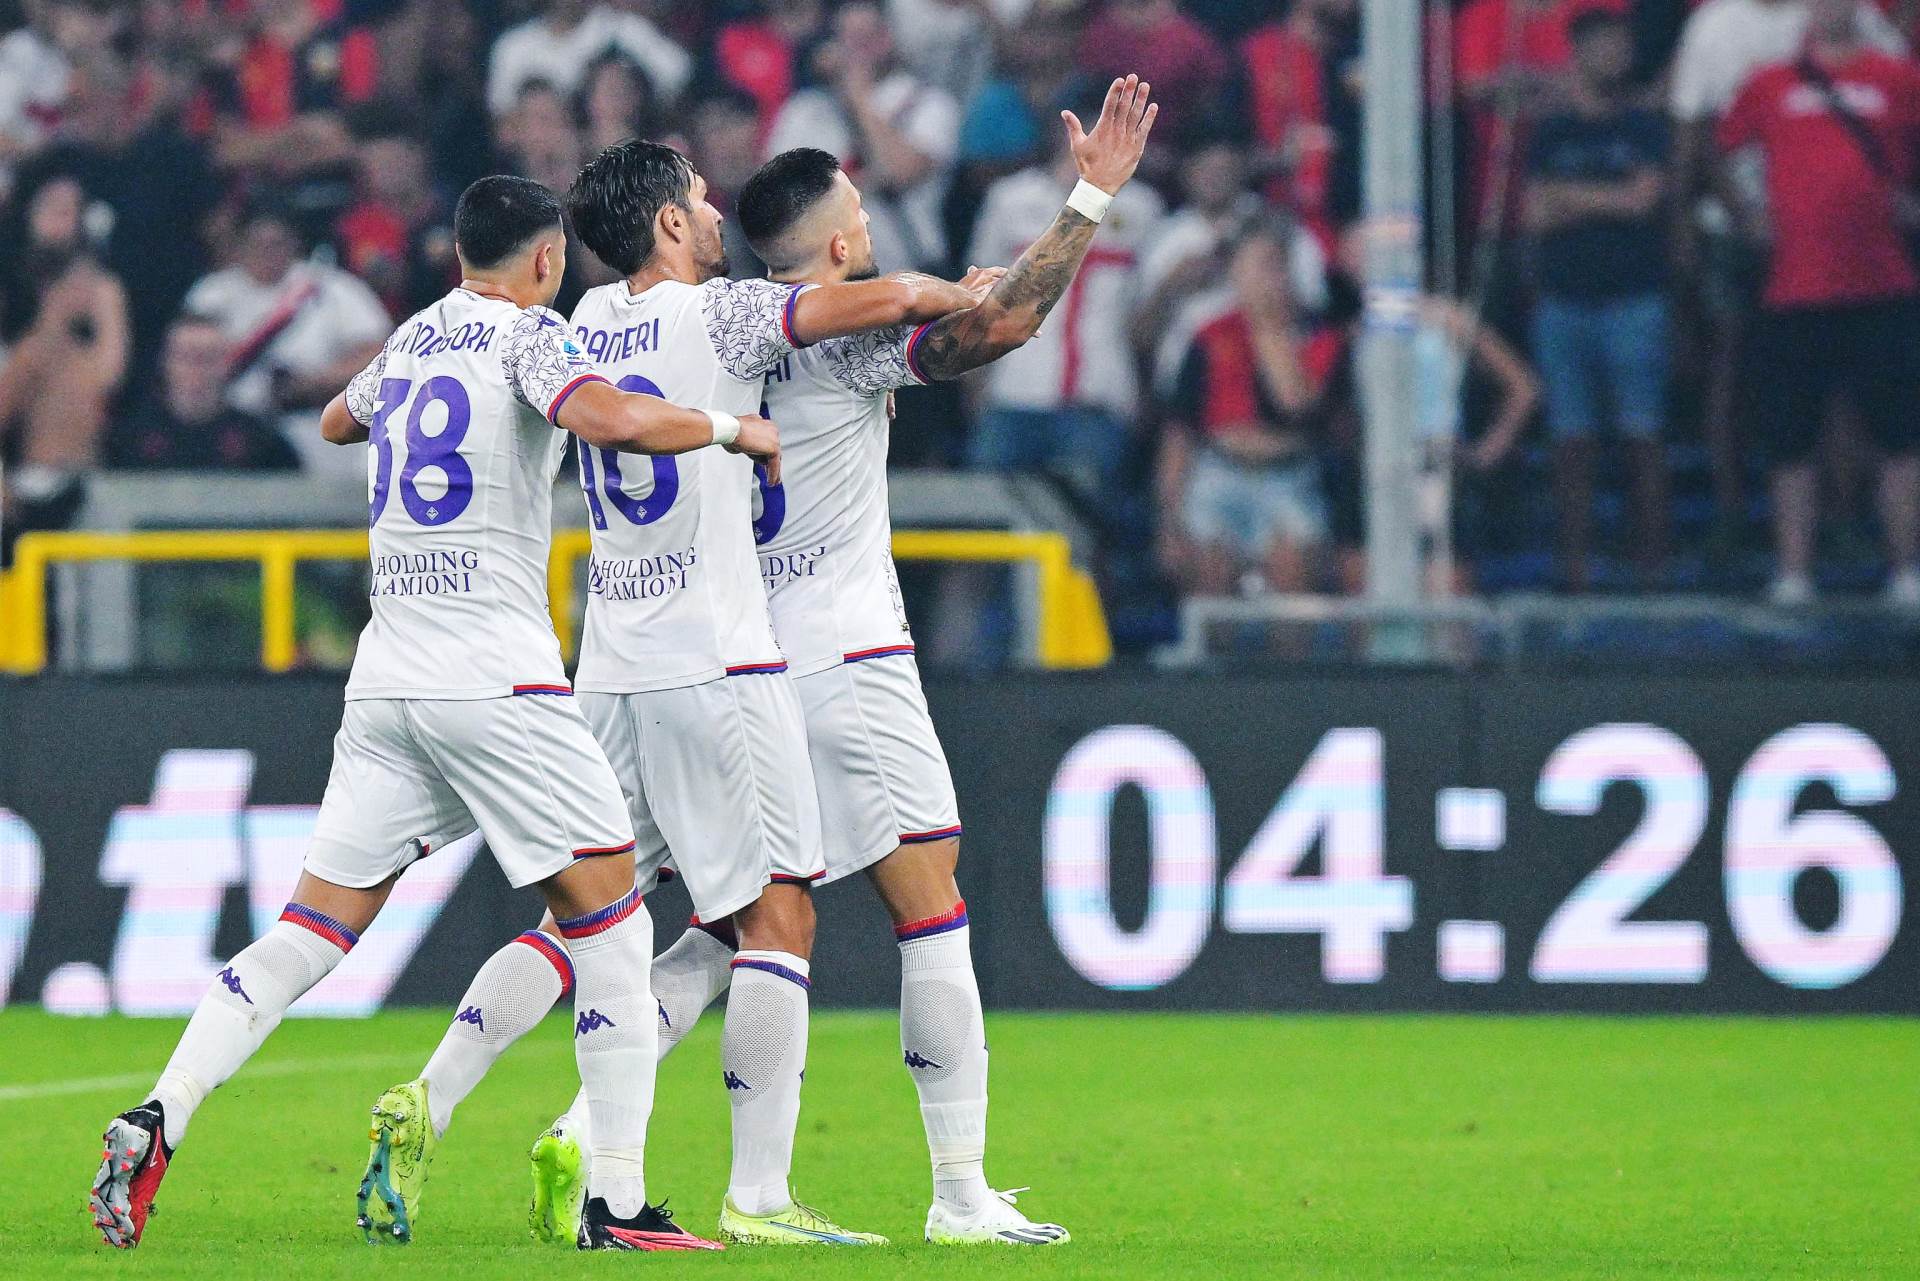  SERIJA A - Fiorentina i Inter pobijedili na otvaranju Serije A 